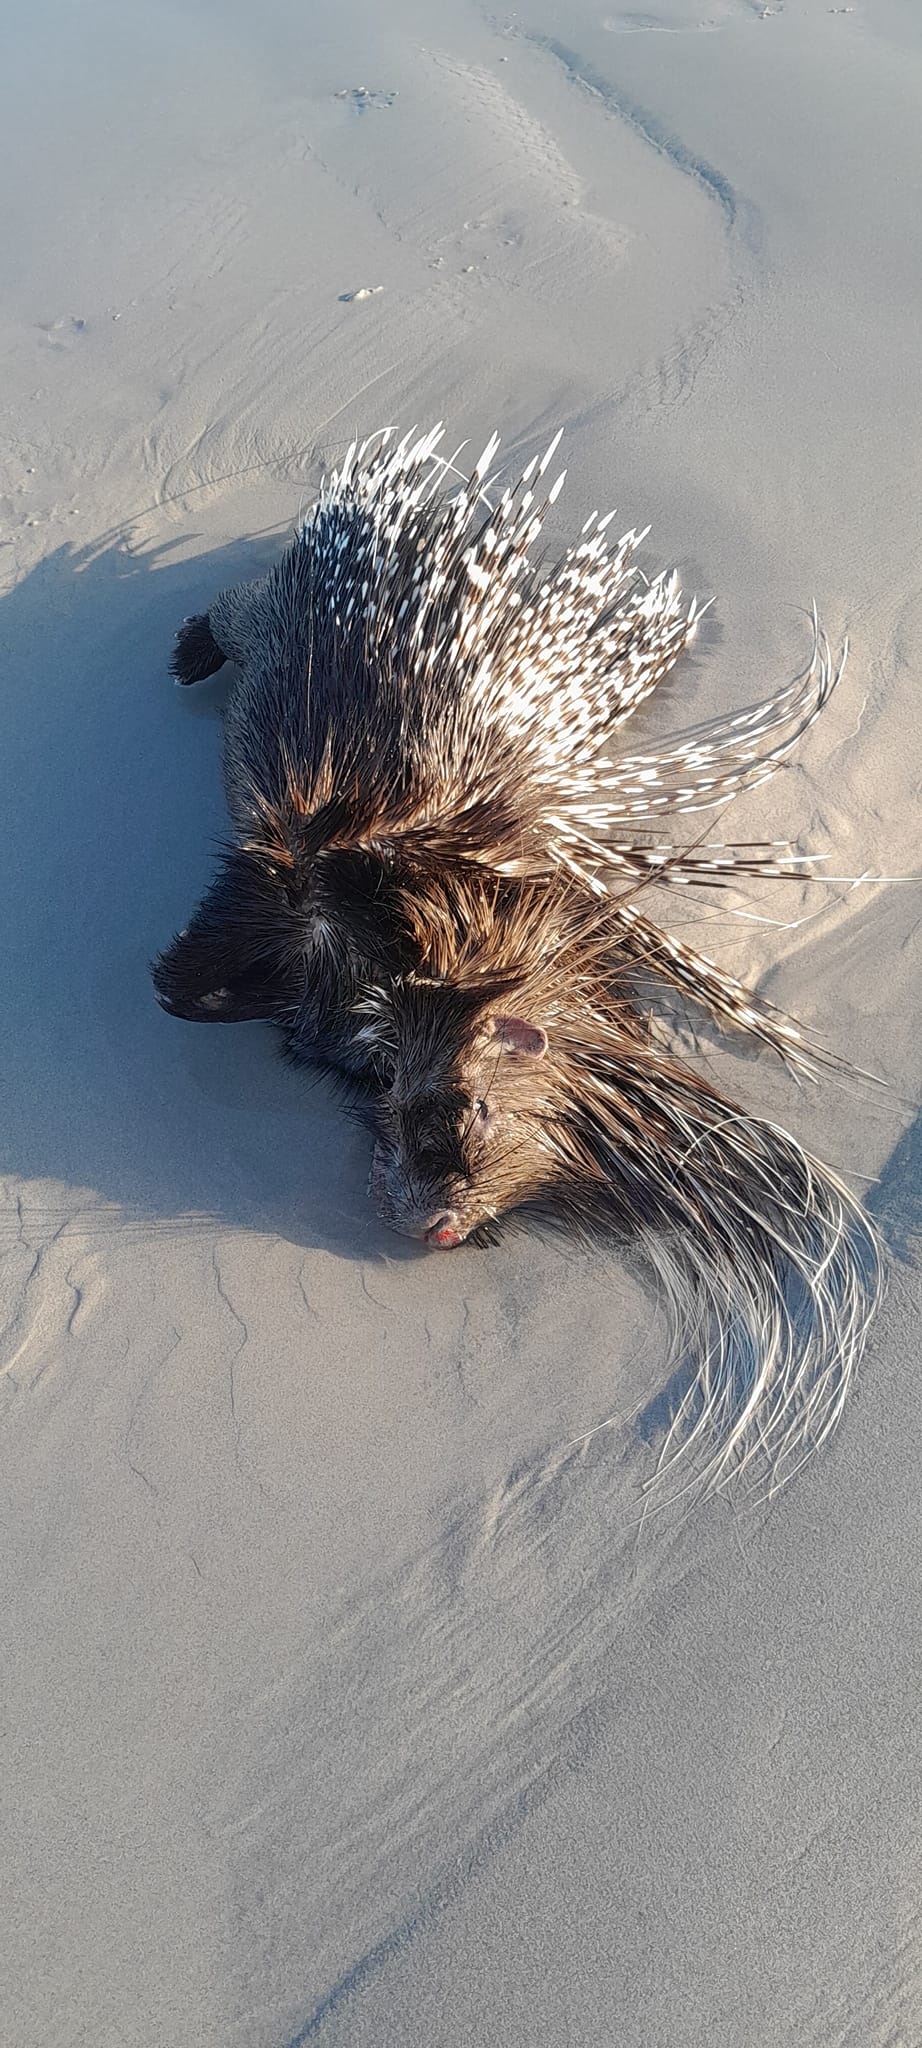 A porcupine washed shore last week in Melkbosstran